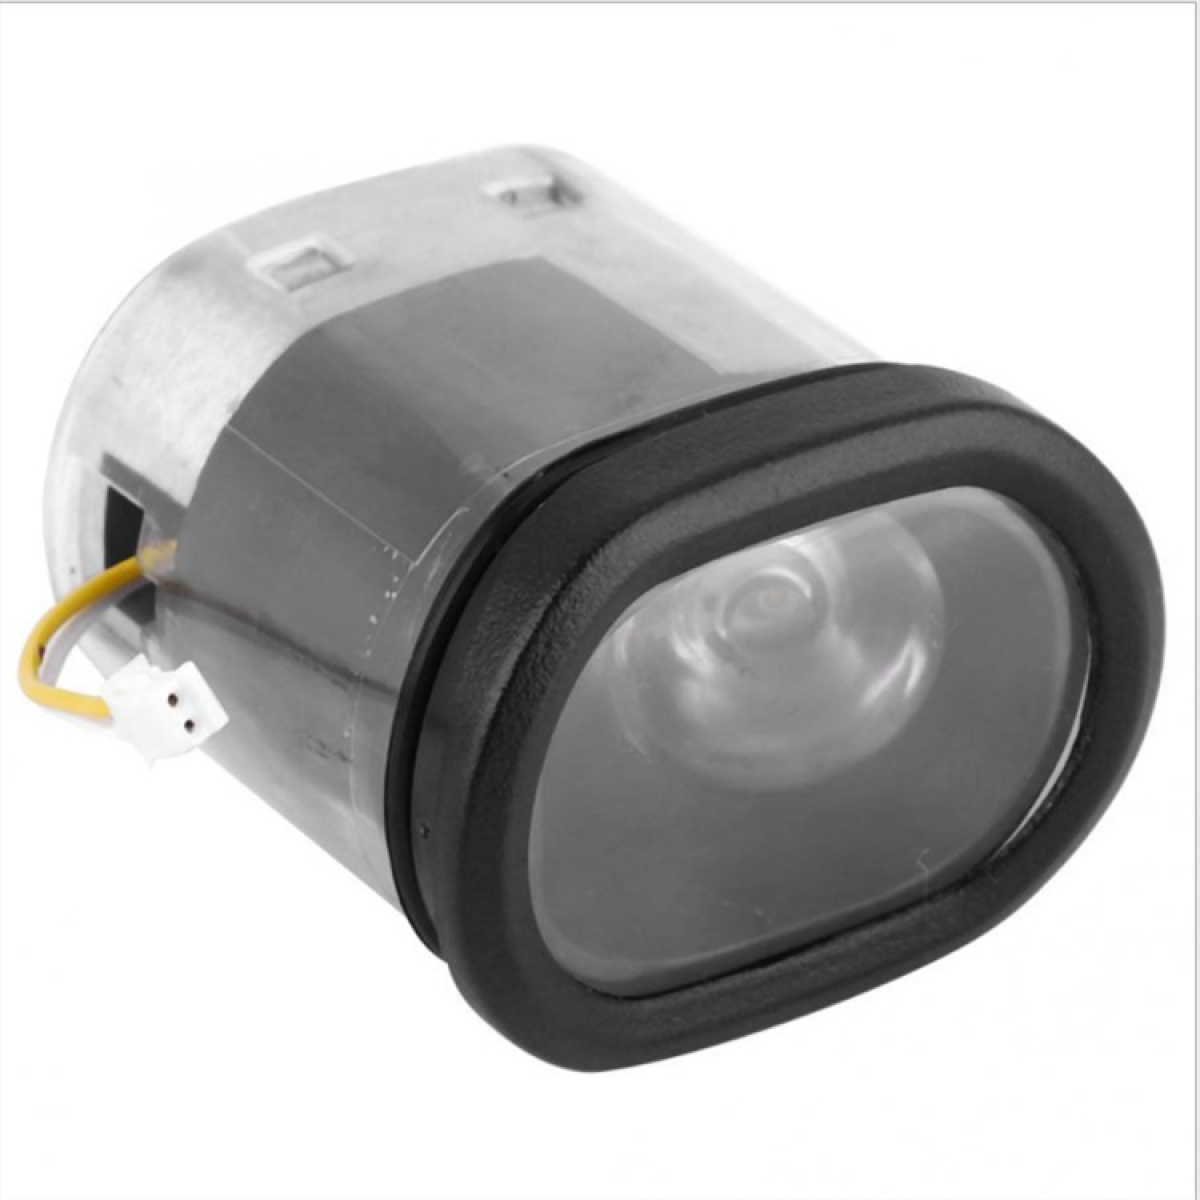 Μπροστινό φως LED ανταλλακτικό ΟΕΜ για Segway Max G30 ηλεκτρικό Scooter πατίνι